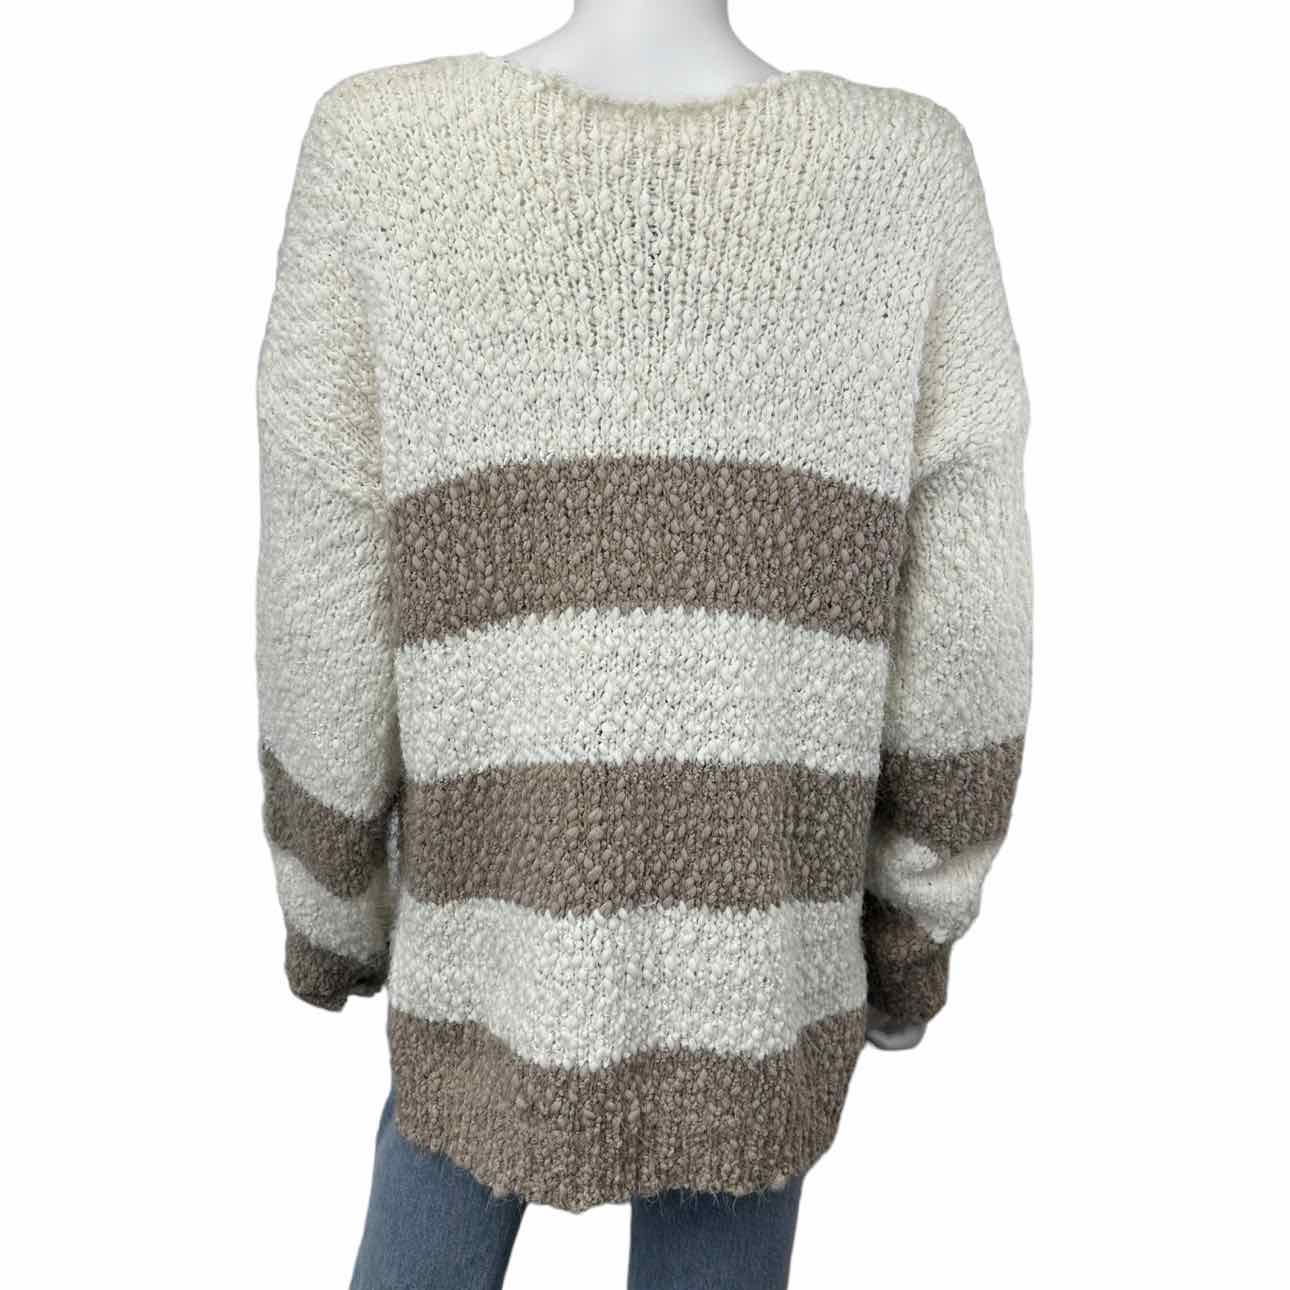 Newbury Kustom NWT White Striped Eyelash Sweater Size L